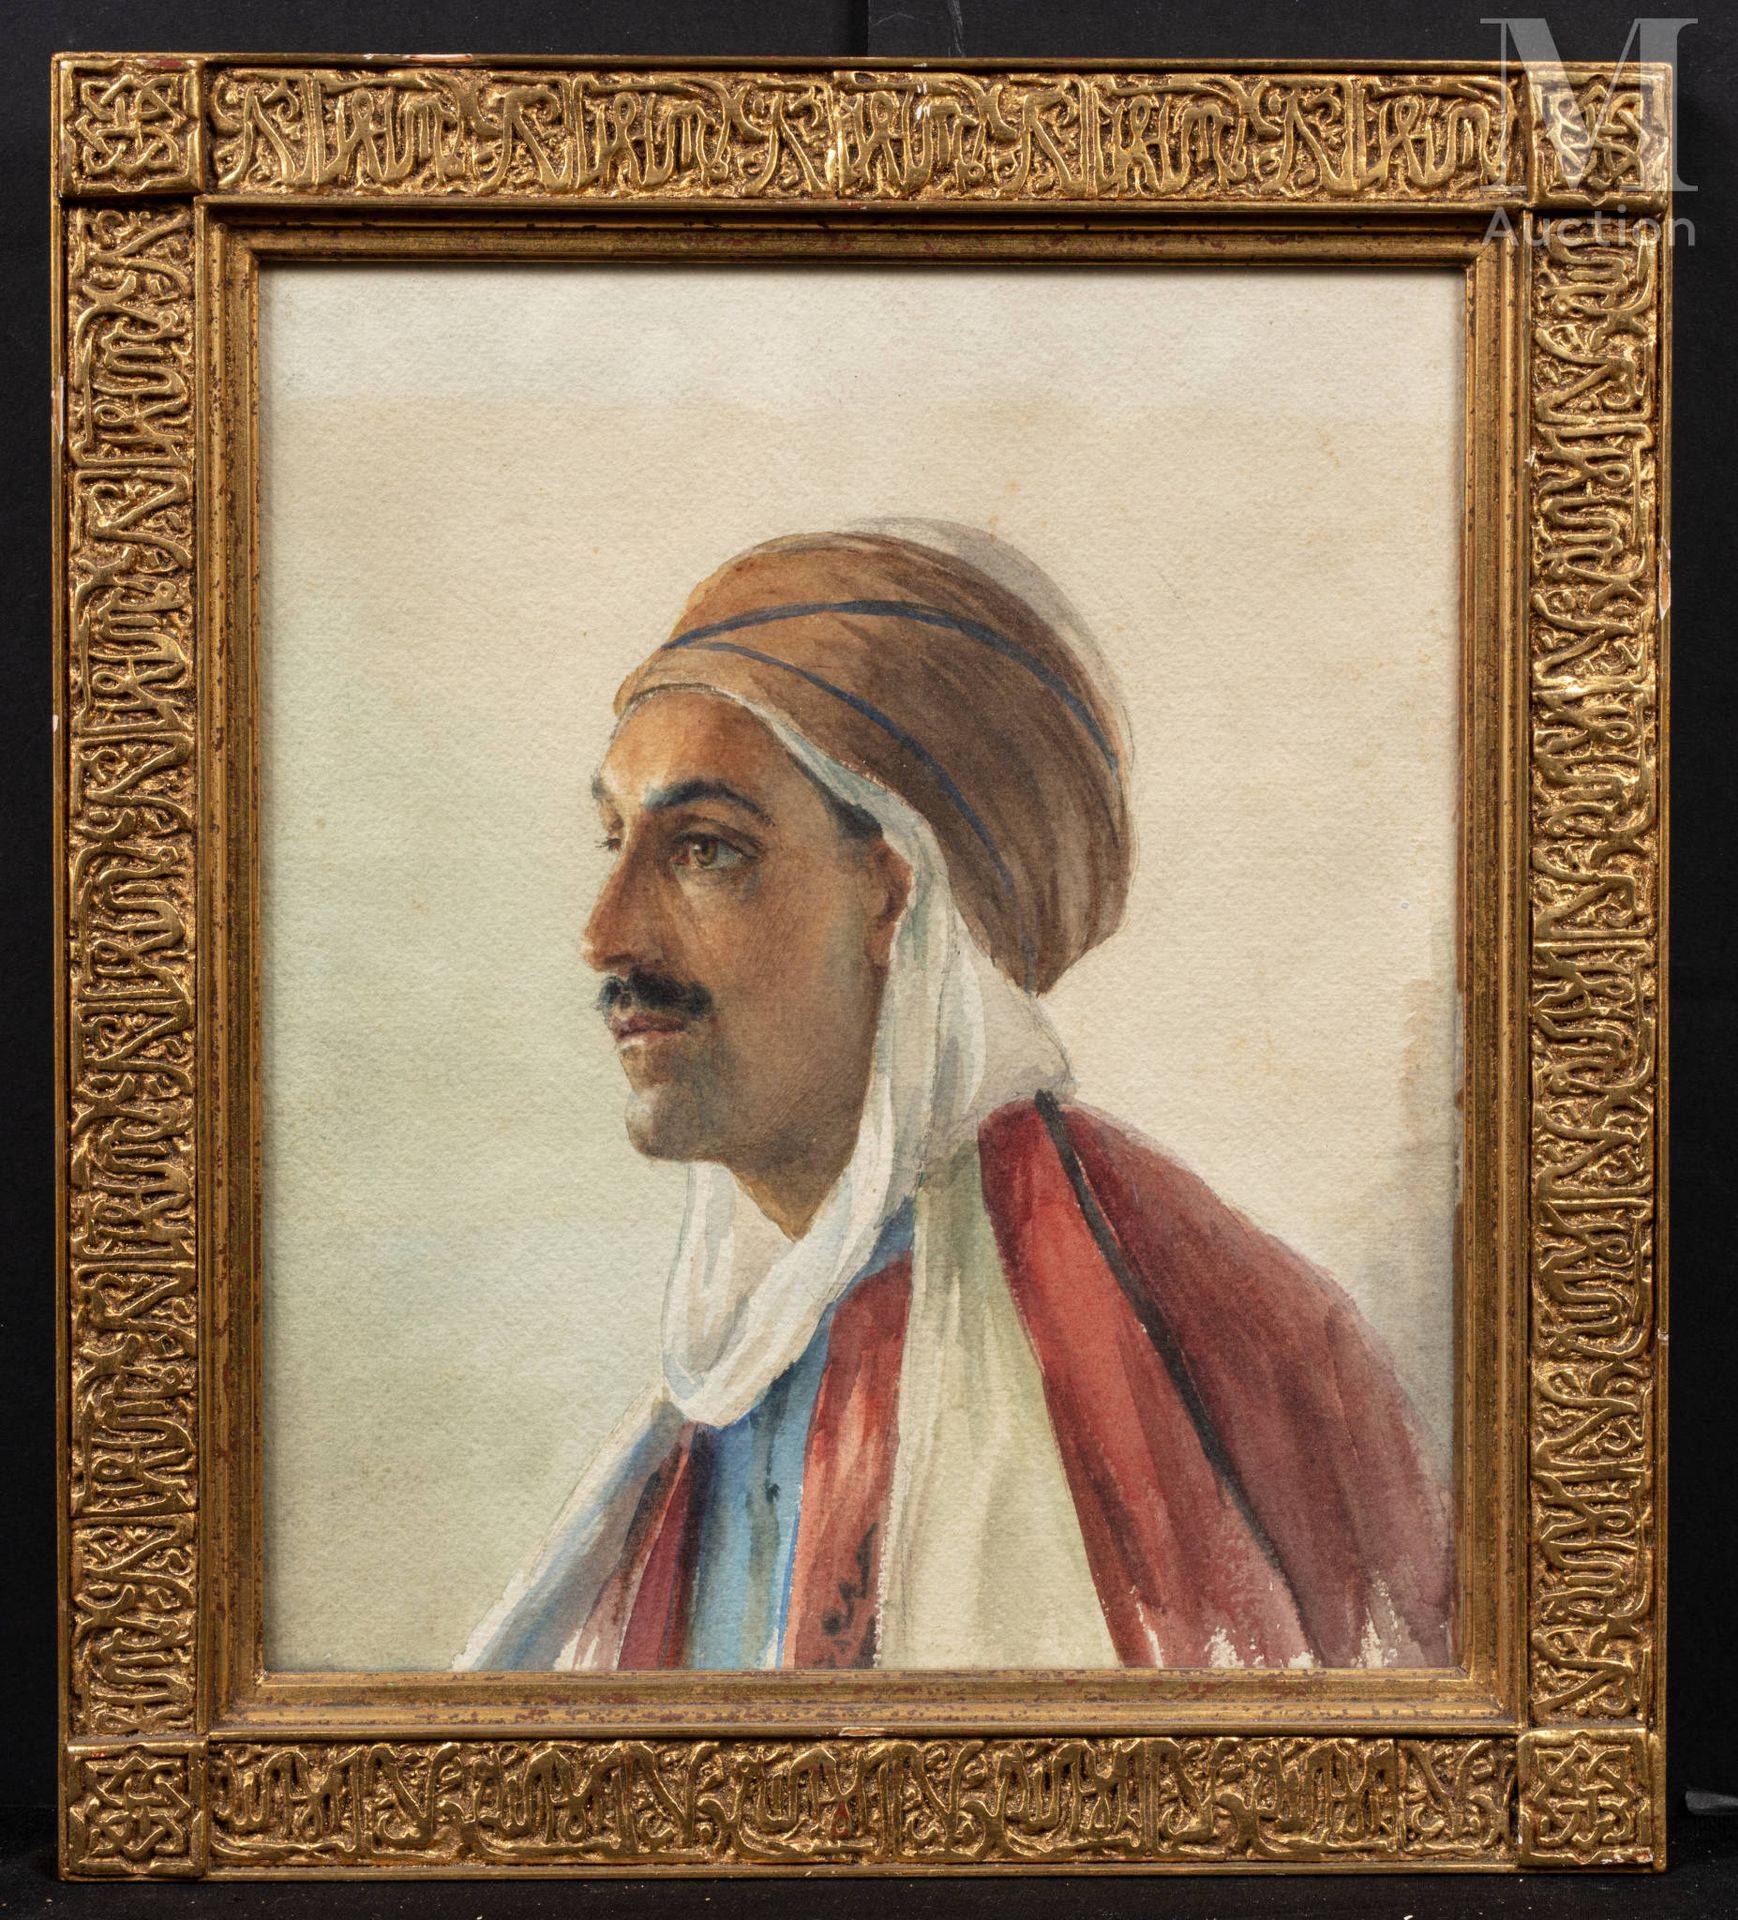 D'ANGLADE (1854 -1919) Ritratto di un uomo con un turbante

Acquerello

32 x 27 &hellip;